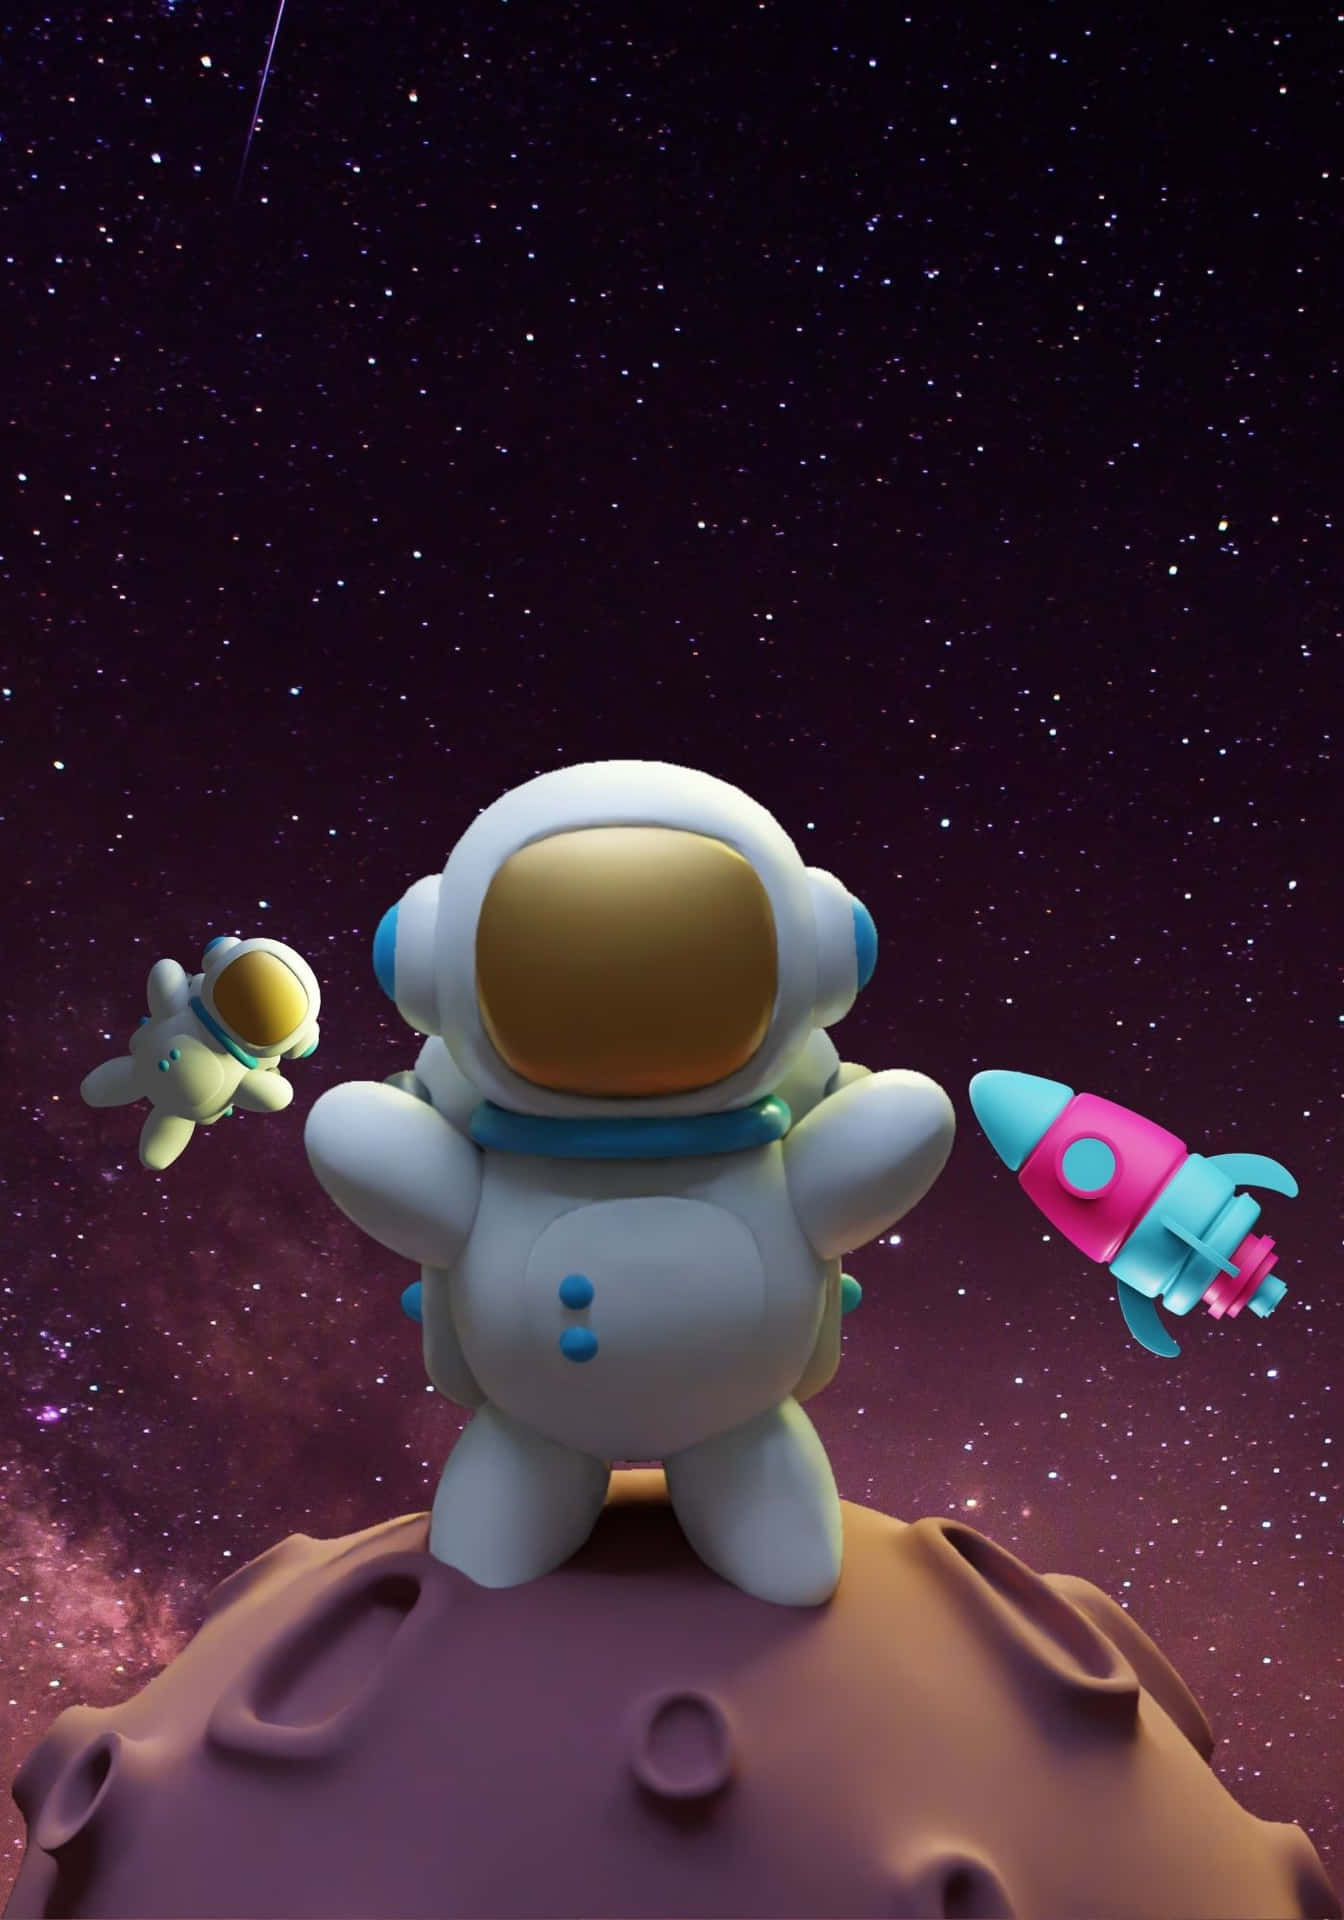 Fondode Pantalla Genial De Astronauta 3d En El Espacio